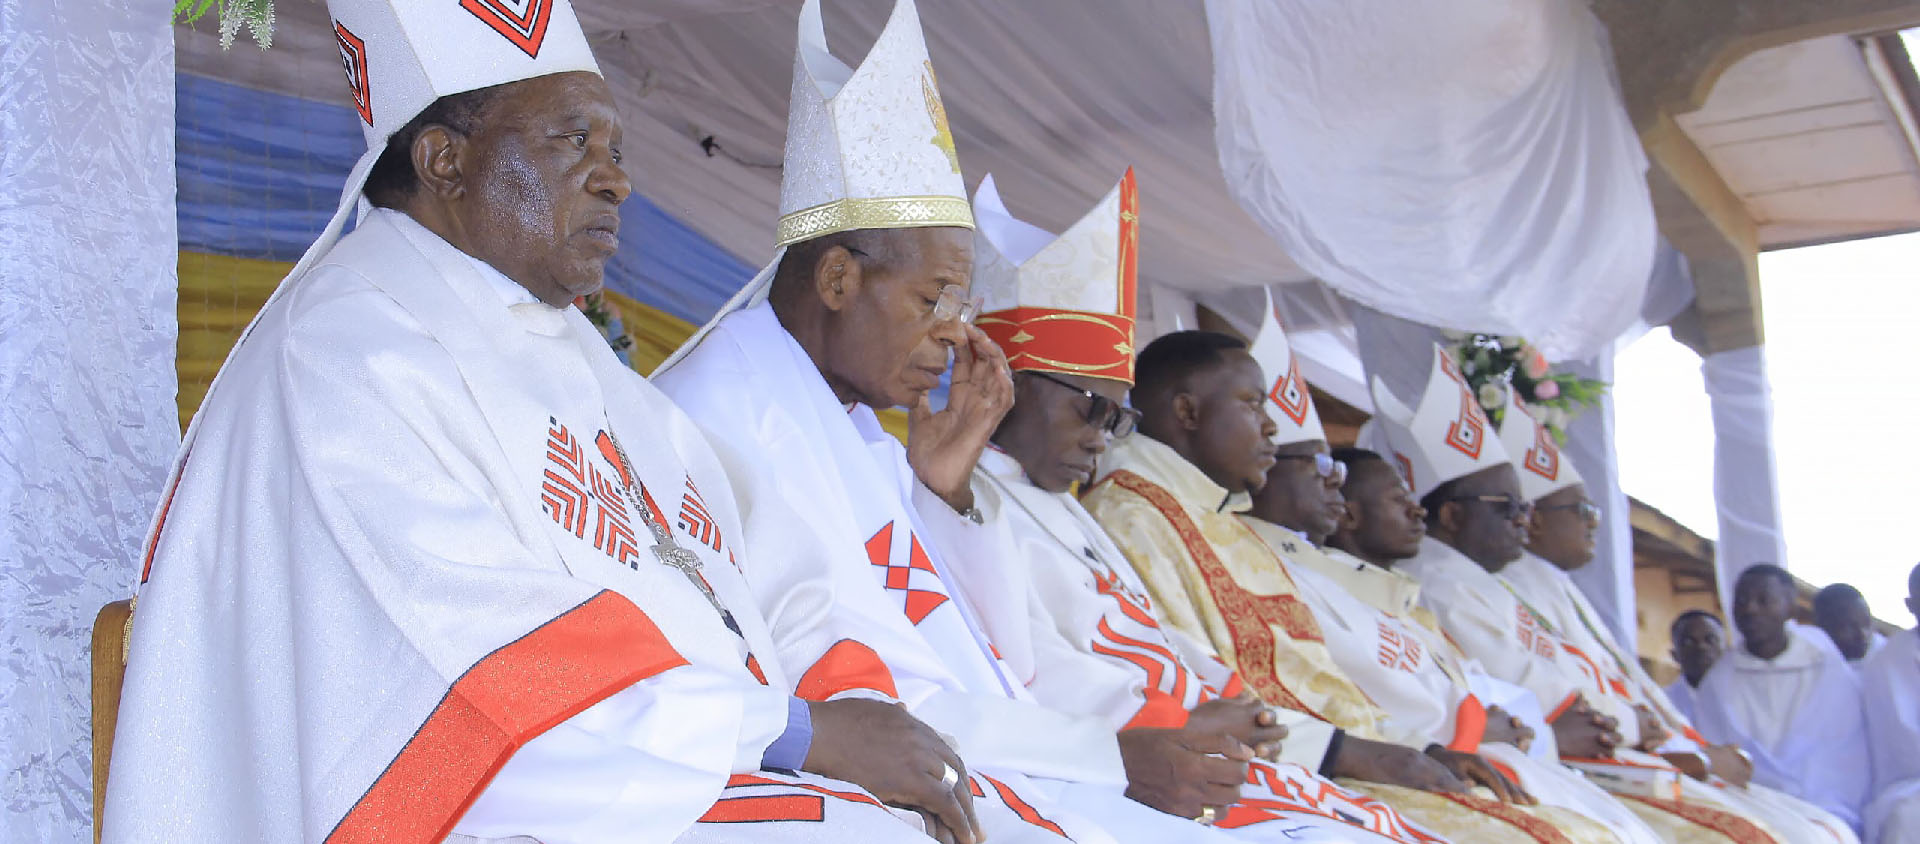 Les Evêques de la province ecclésiastique de Bukavu s’inquiètent de la situation dramatique que traversent leurs diocèses situés géographiquement au Nord-Kivu, Sud-Kivu et Maniema | © CENCO